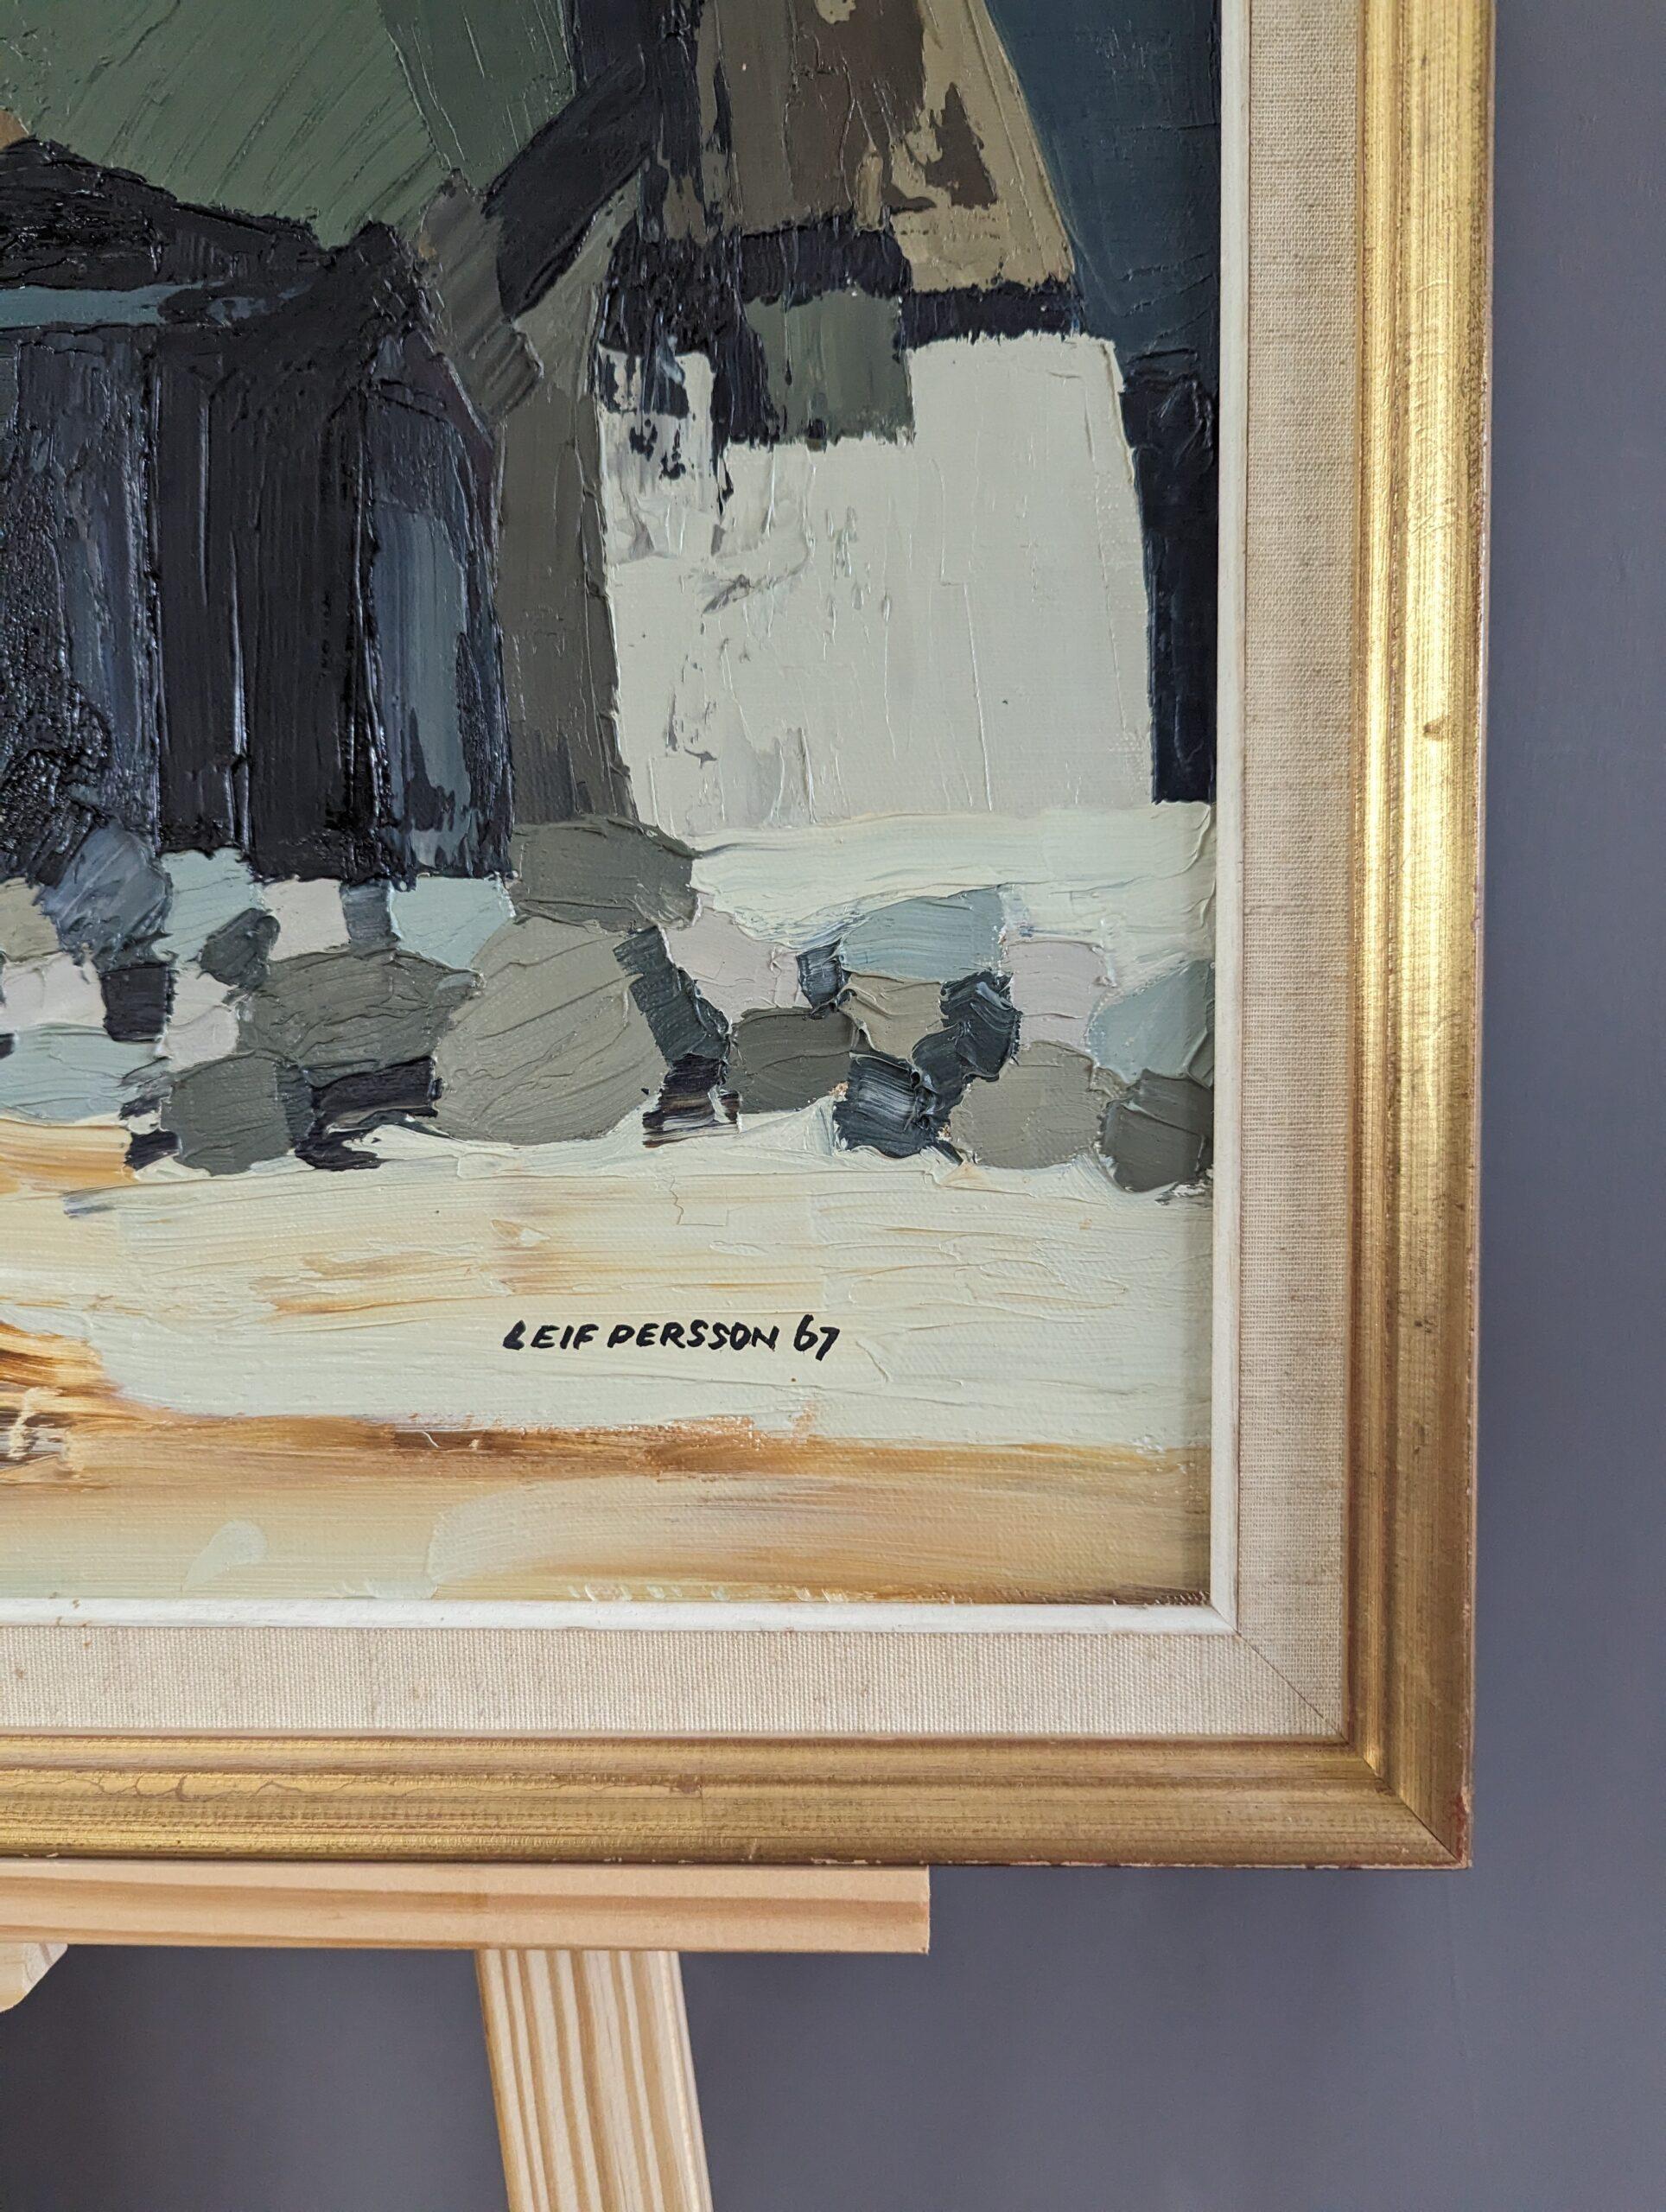 NATURE-WOHNUNGEN
Größe: 42,5 x 68 cm (einschließlich Rahmen)
Öl auf Leinwand

Eine brillant ausgeführte halb-abstrakte Komposition, gemalt in Öl auf Leinwand und datiert 1967.

In dieser abstrakten Naturlandschaft wurden alle realistischen Details